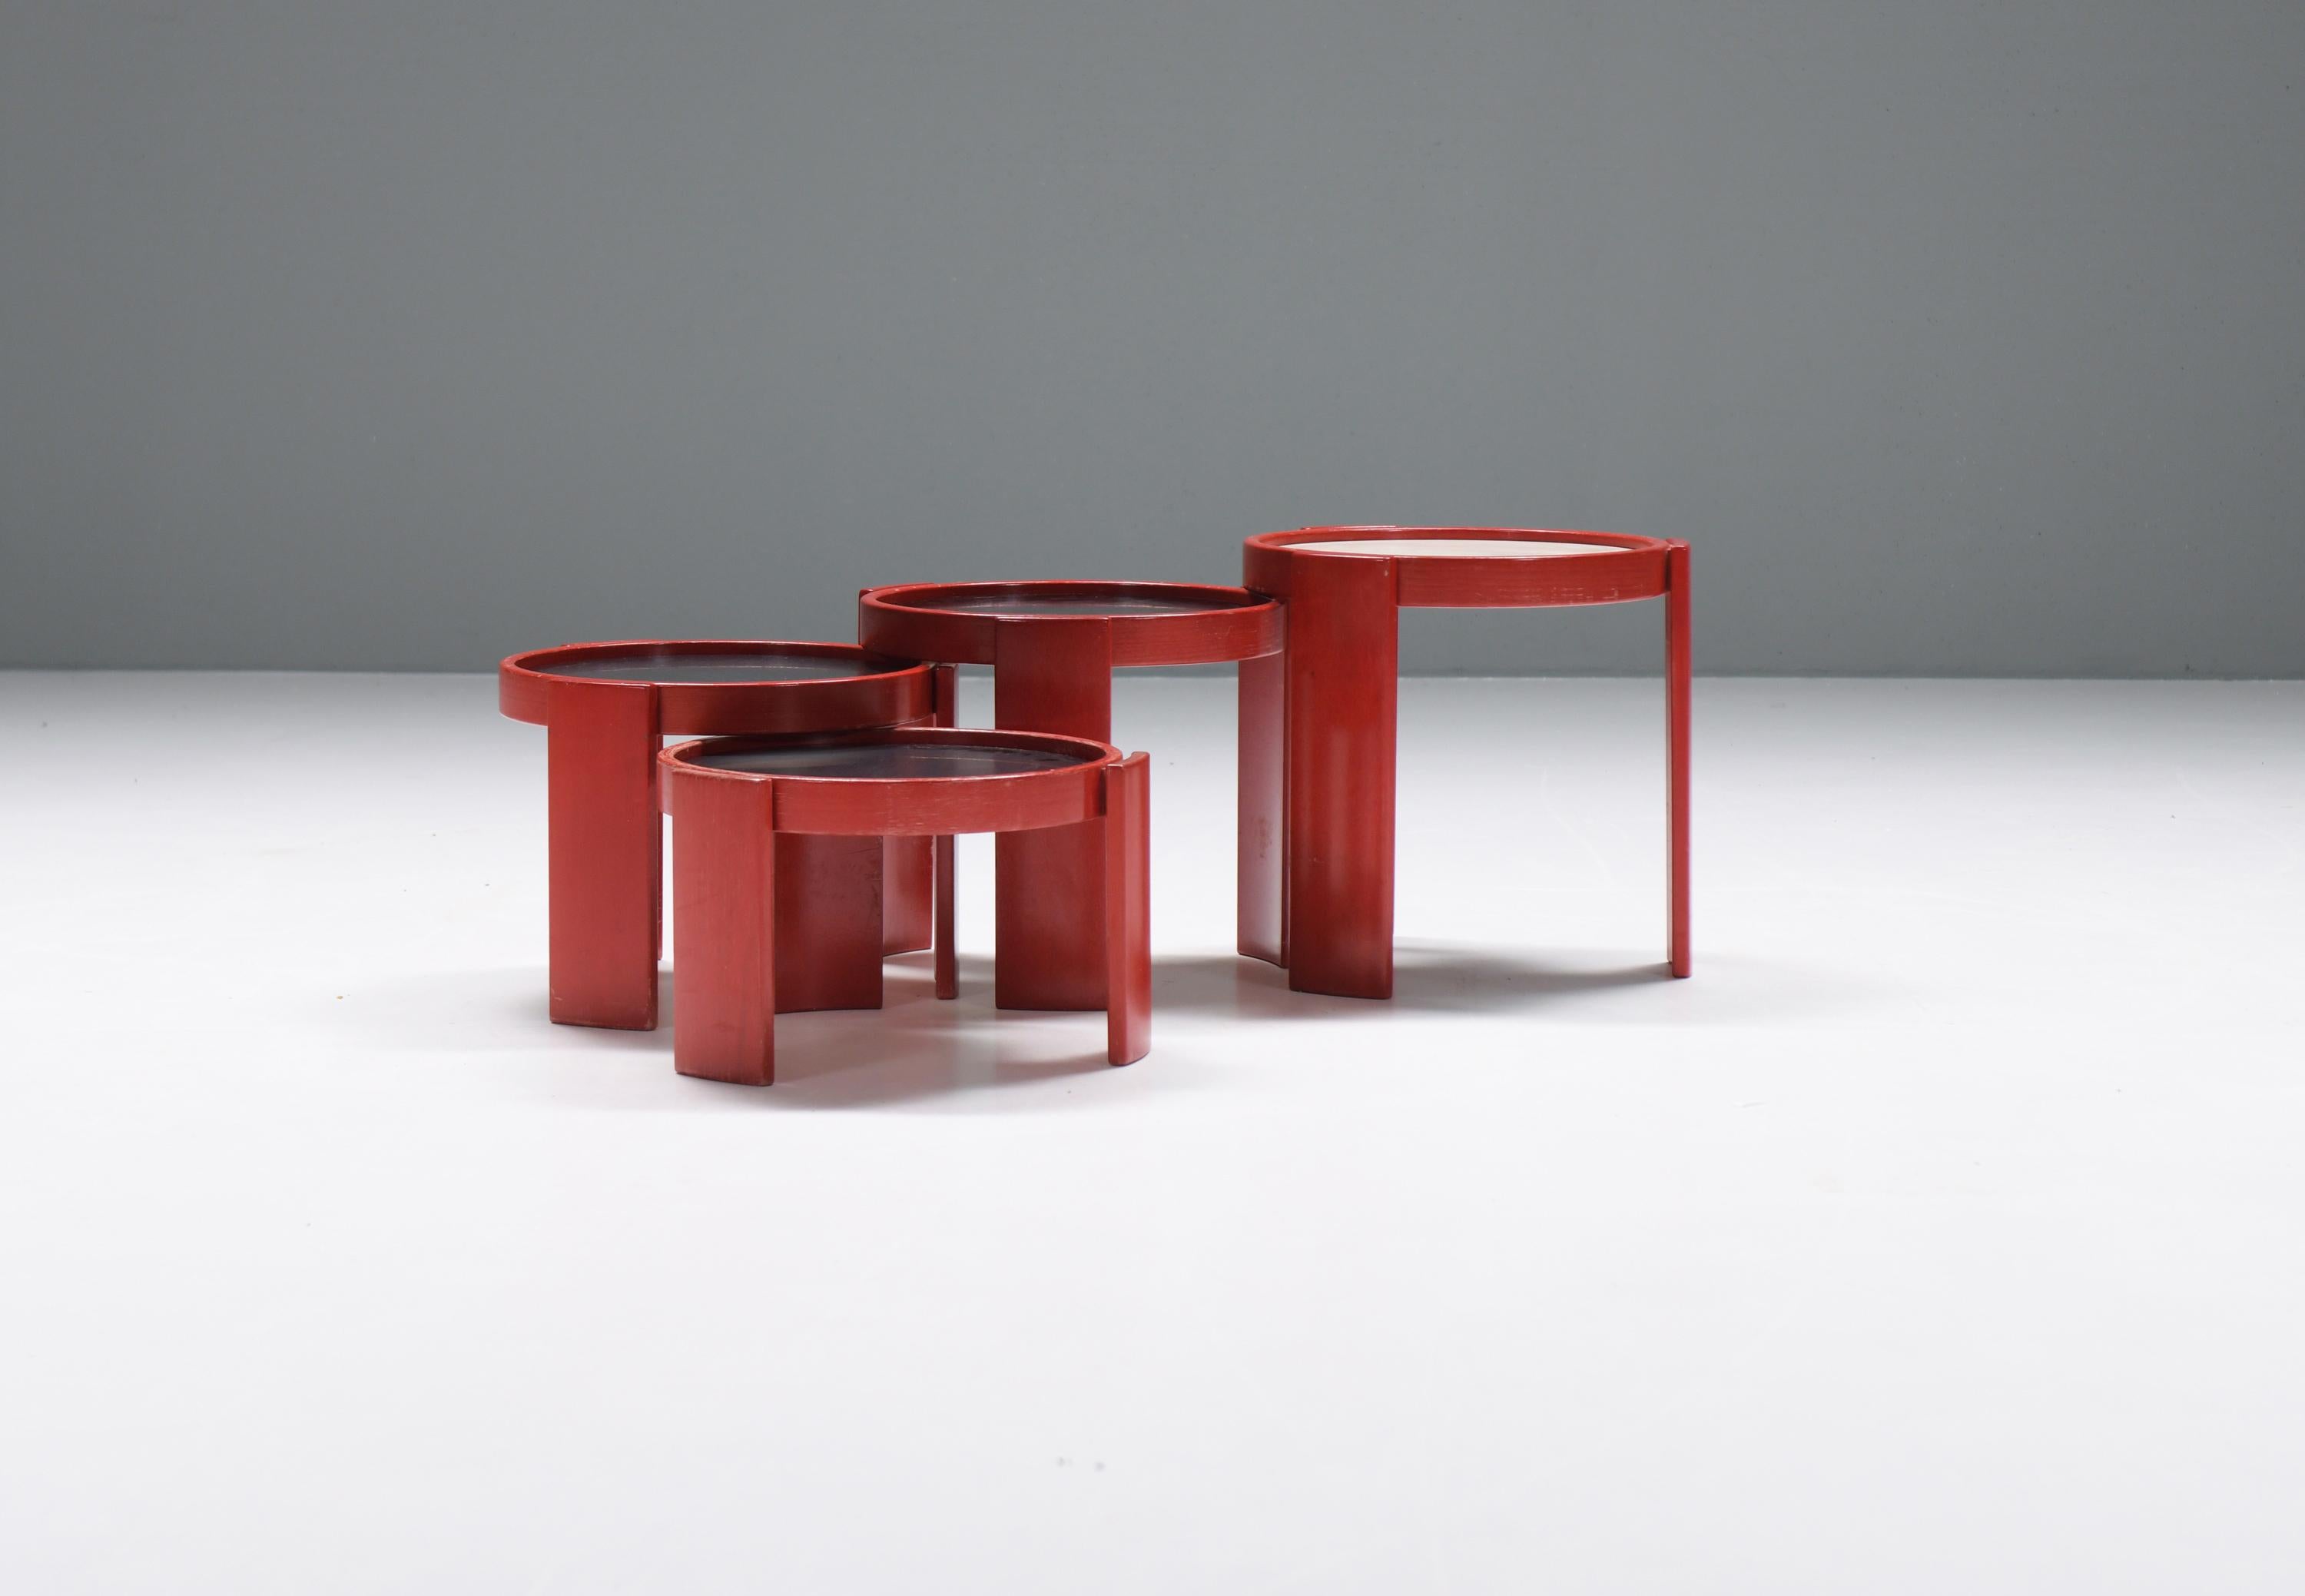 Atemberaubende Beistelltische (Modell 780) von Gianfranco Frattini für Cassina, 1960er Jahre.  Noch 100% original in einer sehr seltenen roten Farbe.
Entworfen von Gianfranco Frattini für CASSINA

4 modulare, stapelbare Tische Modell 780, entworfen